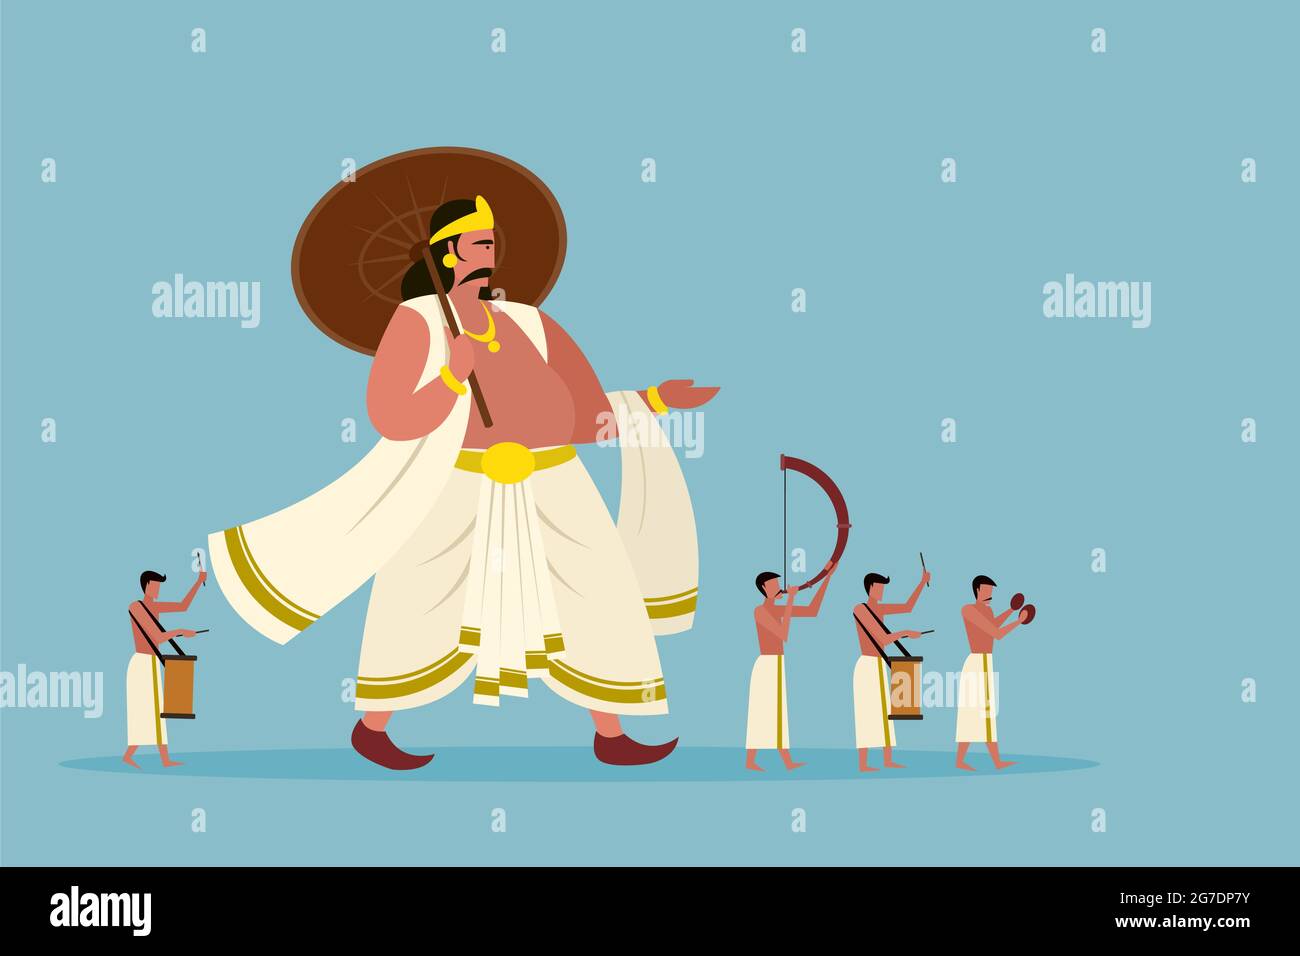 Le roi mythique de Kerala 'Mahabali' marche avec des personnes jouant des instruments de percussion pendant le Festival d'Onam Illustration de Vecteur